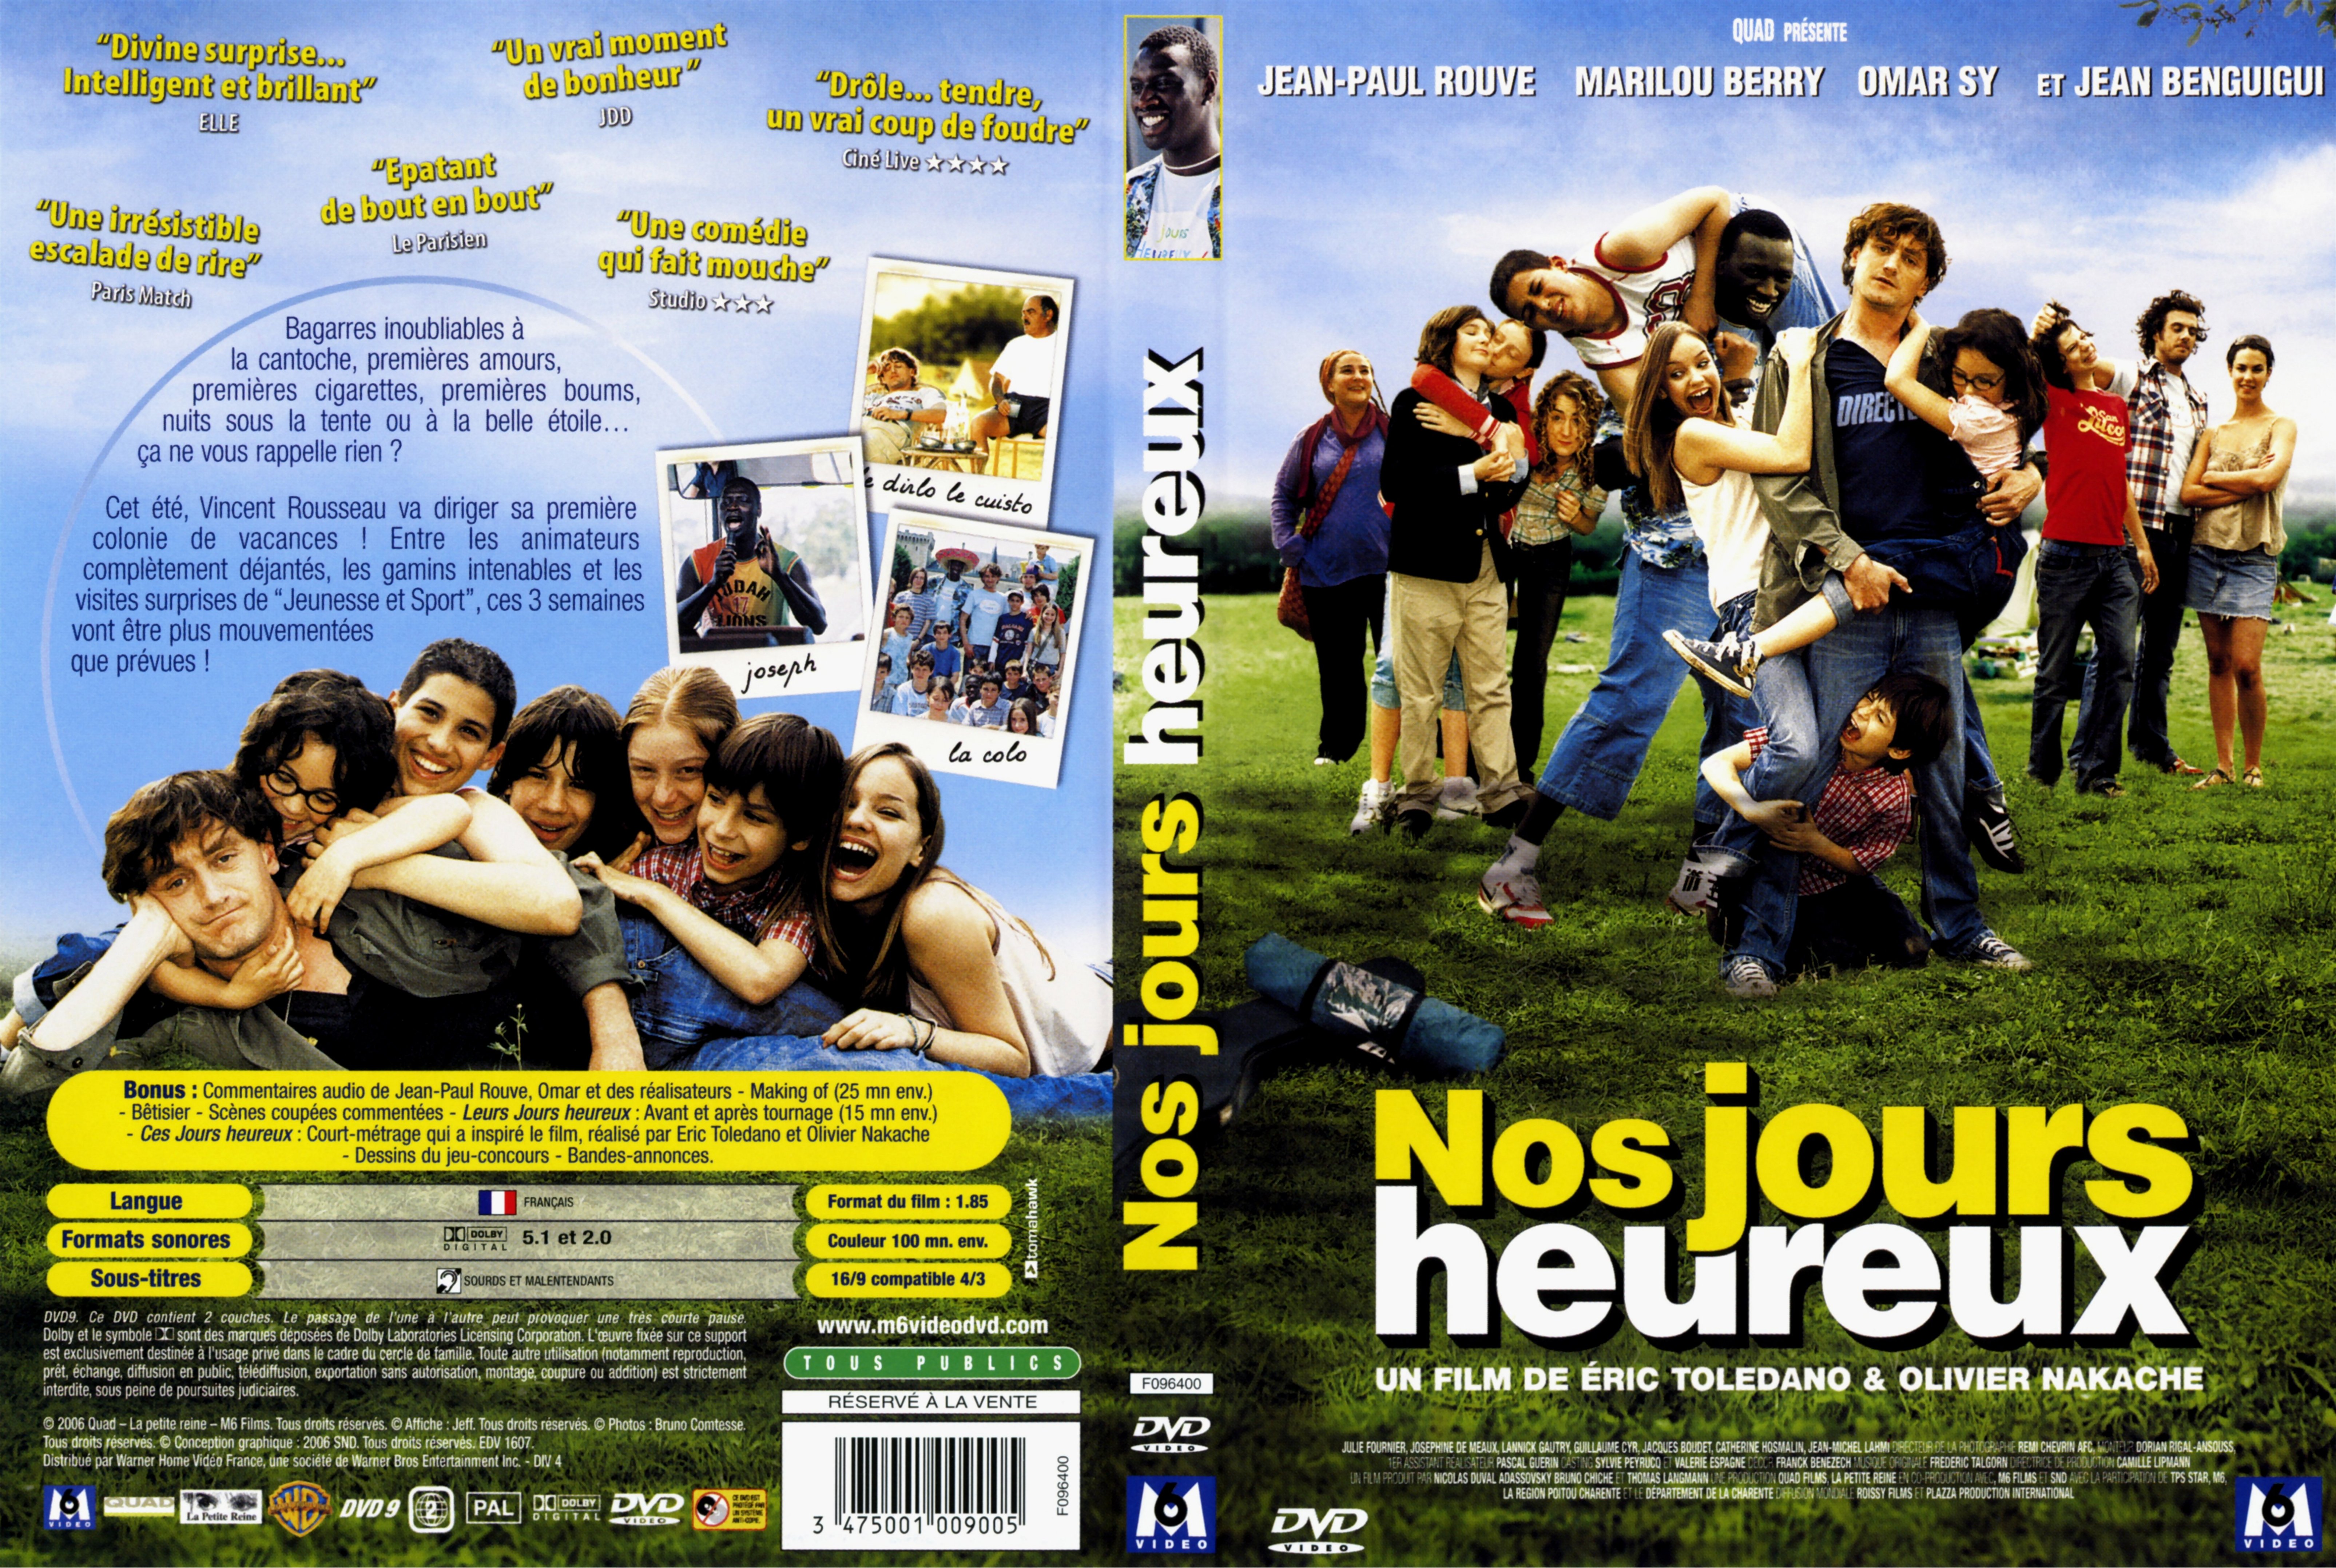 Jaquette DVD Nos jours heureux